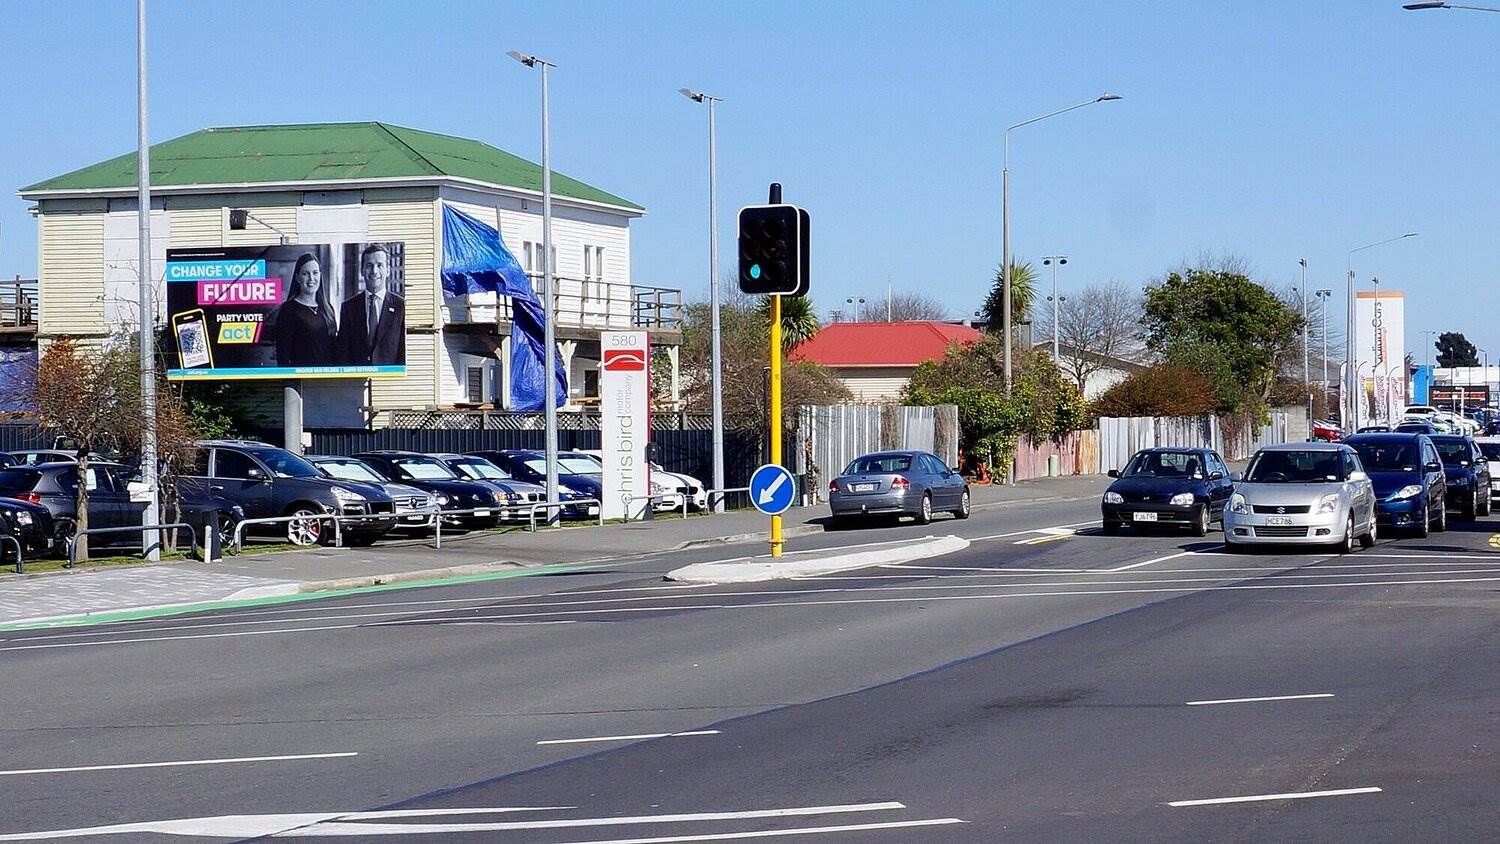 Jolly Billboards CH-70 580 Moorhouse Avenue CBD Christchurch